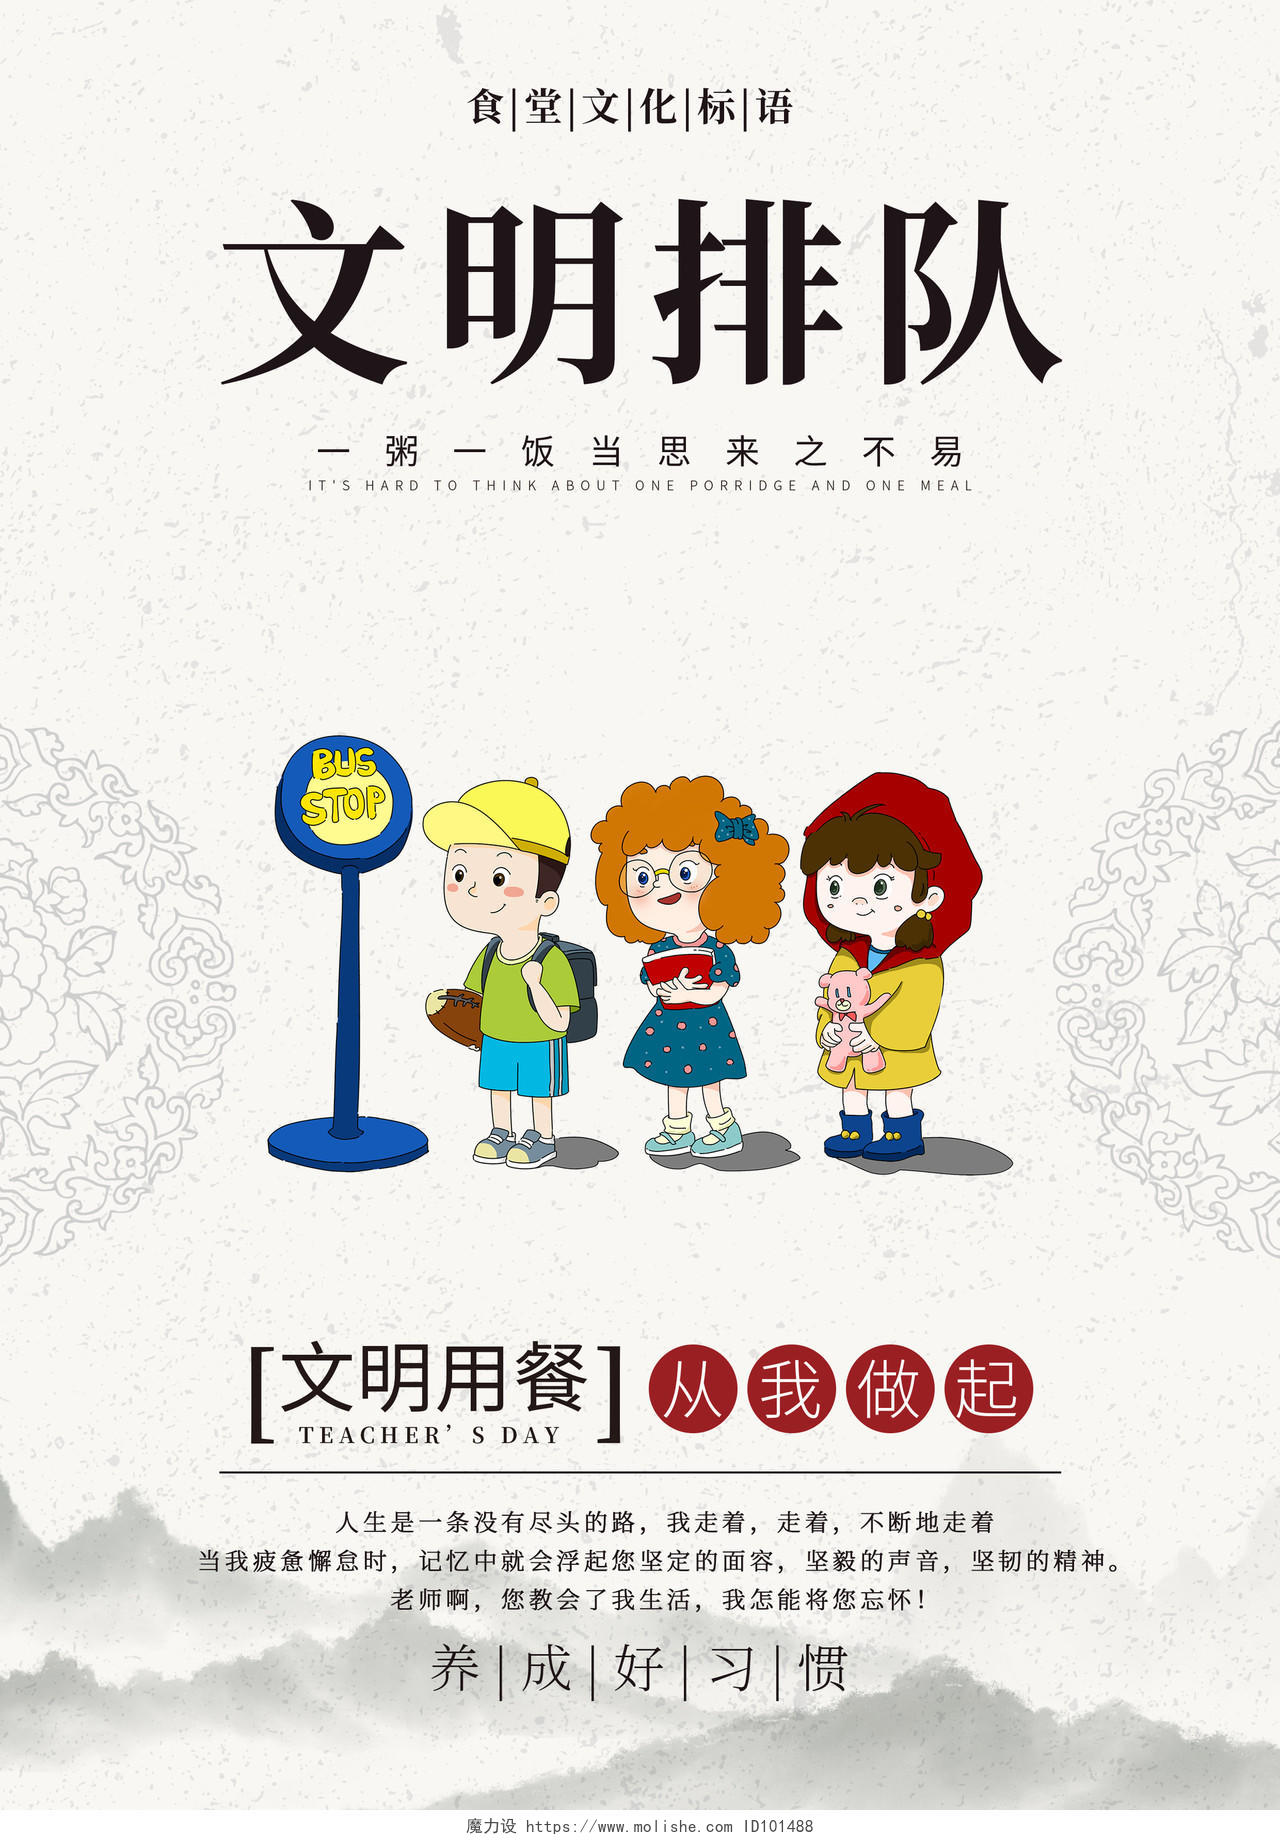 中国风文明用餐文明排队讲究卫生食品安全海报模板